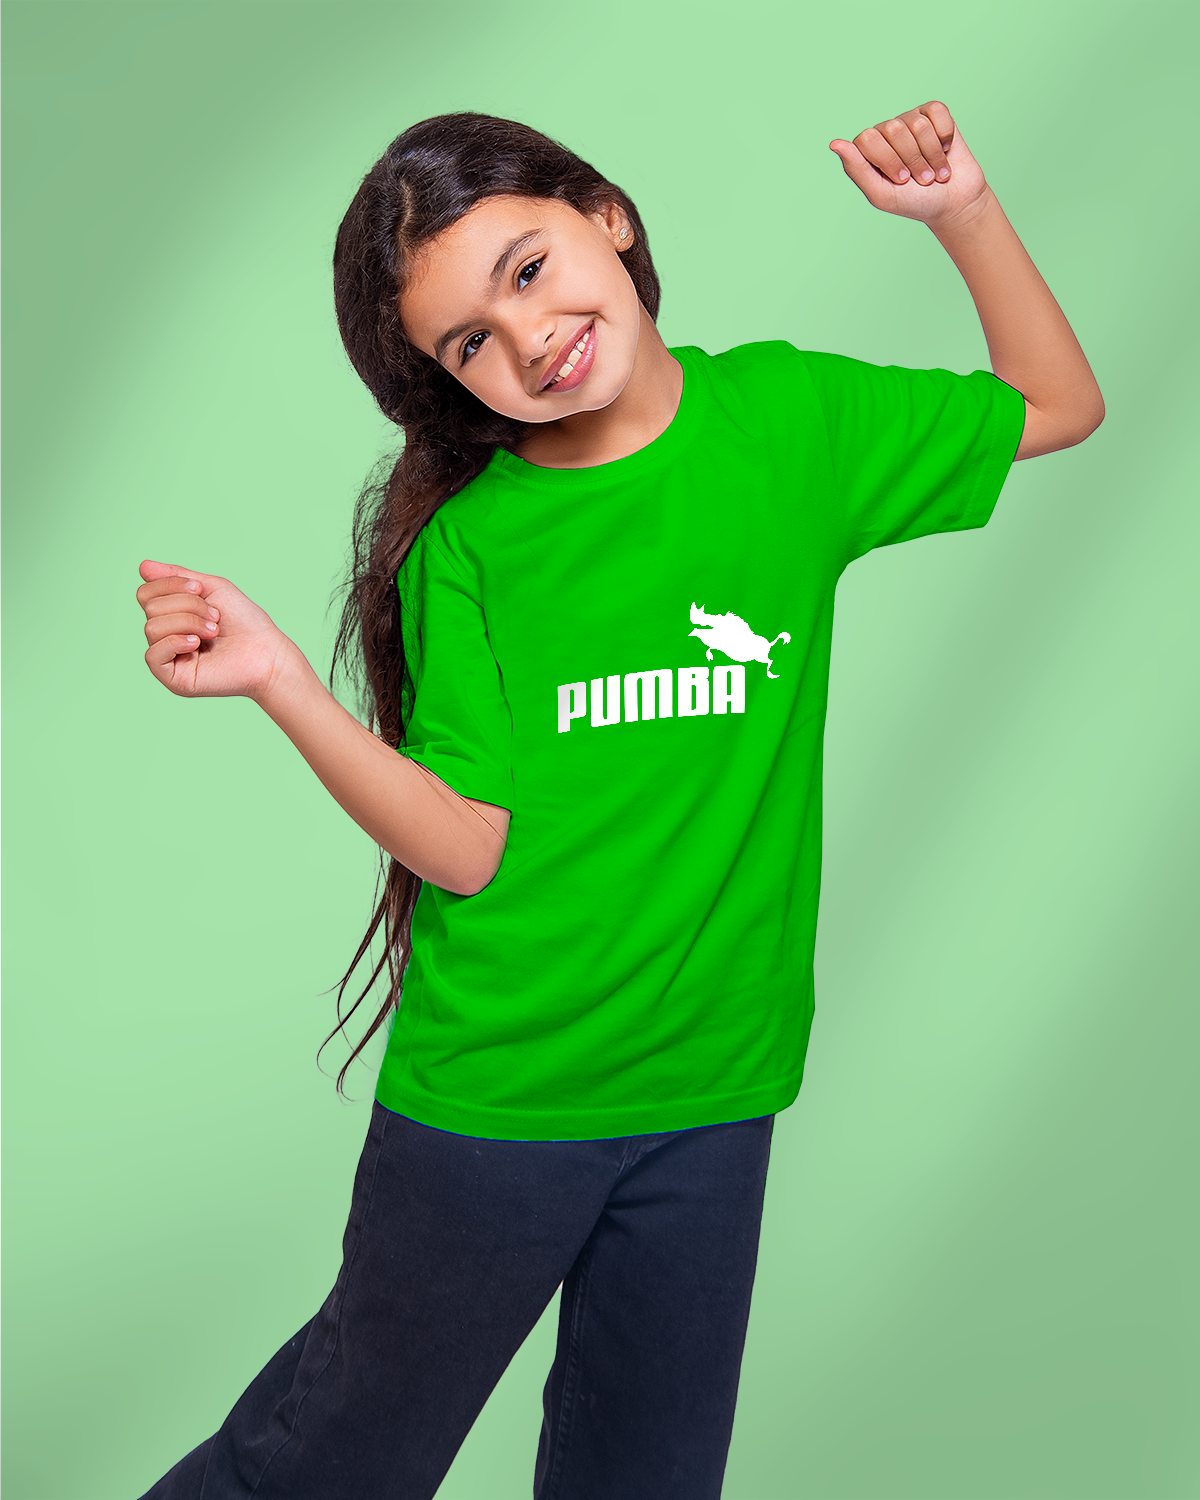 T-shirt For Girls (Pumpa)